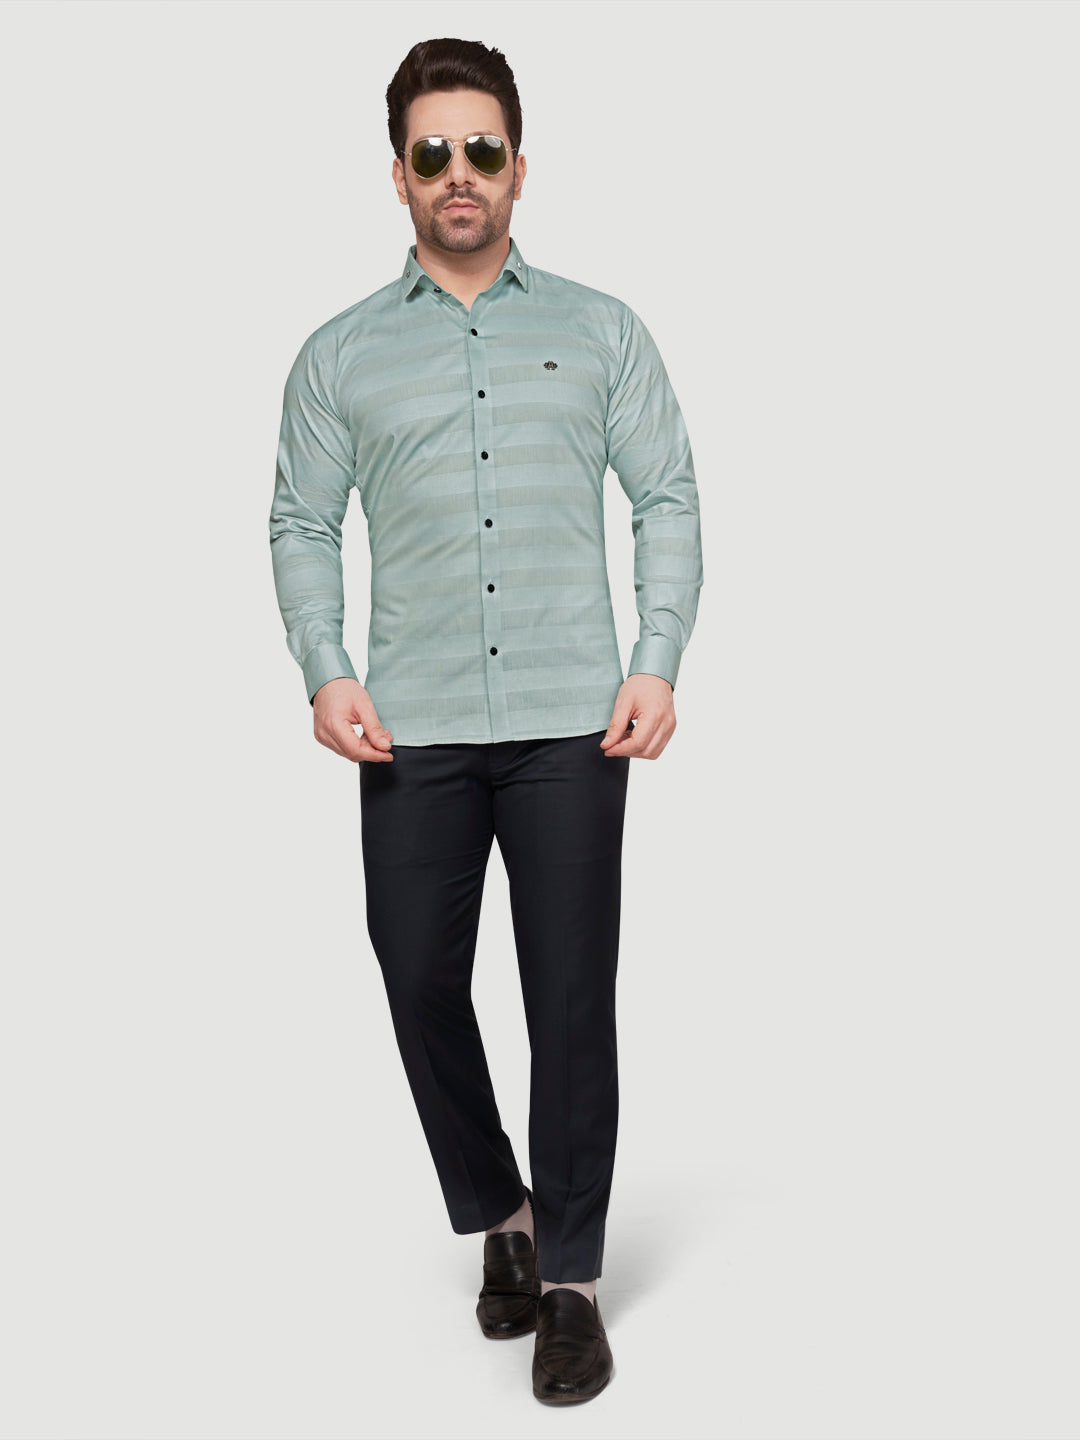 Black and White Men's Weft Designer Shirt Green